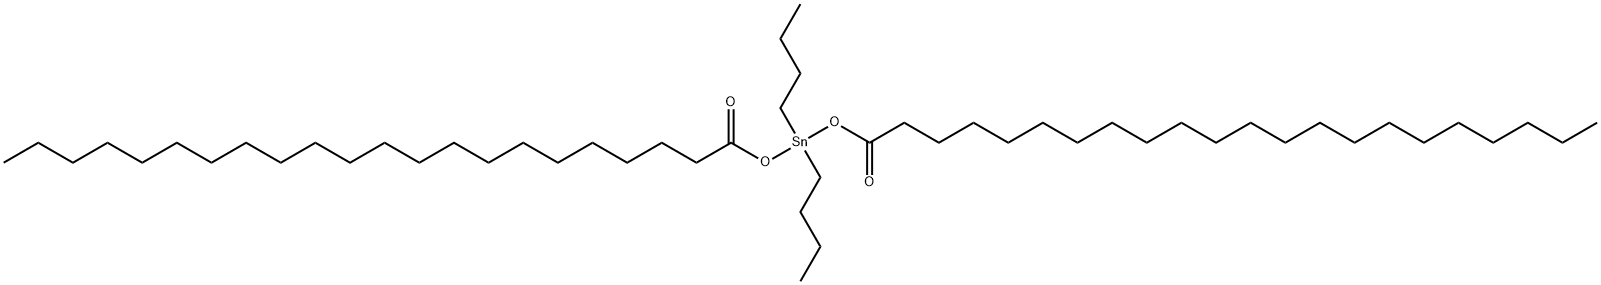 二ドコサン酸ジブチルスタンナンジイル 化学構造式